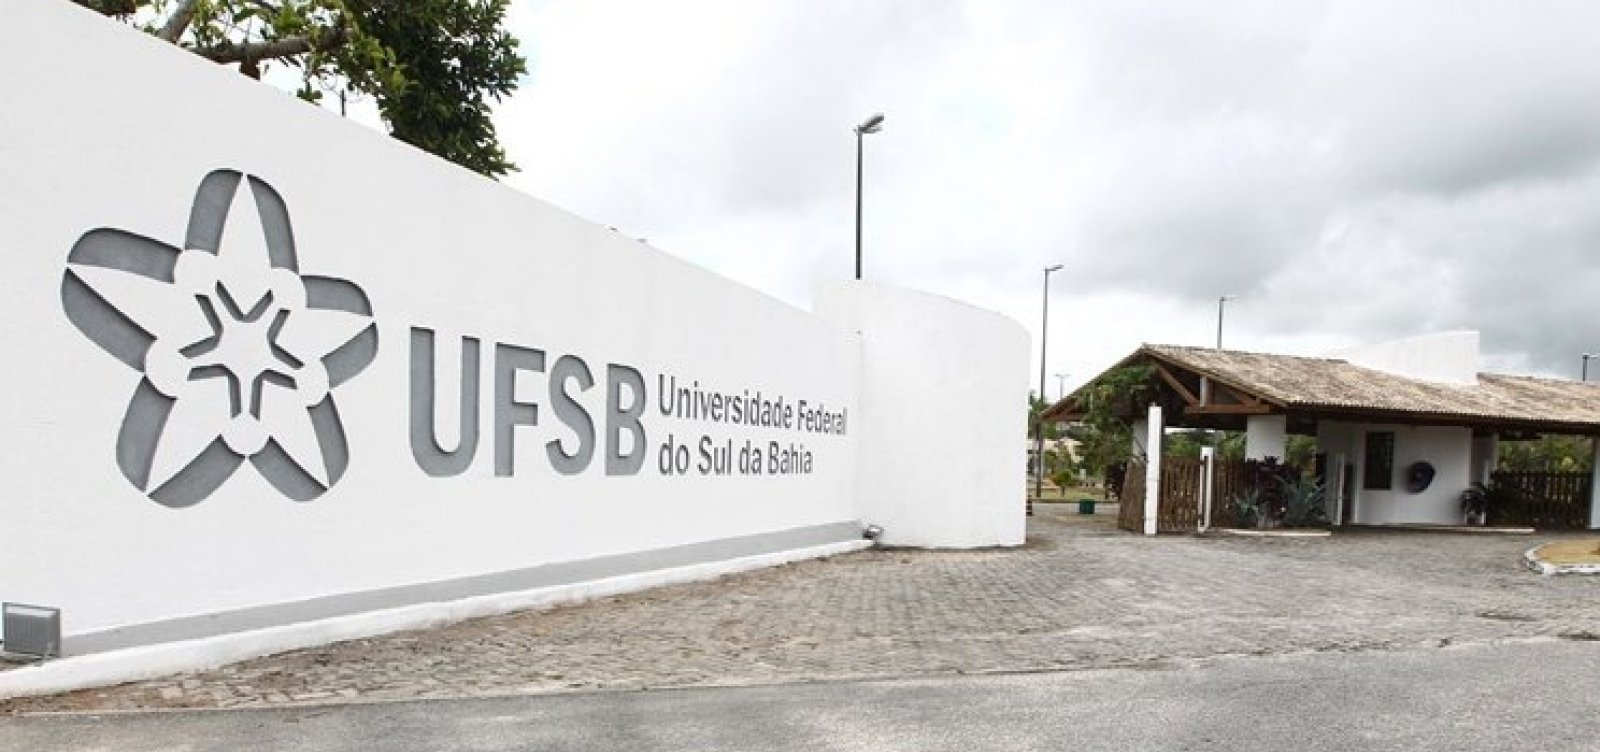 UFSB vai reduzir gastos com pesquisa para pagar contas de energia e água